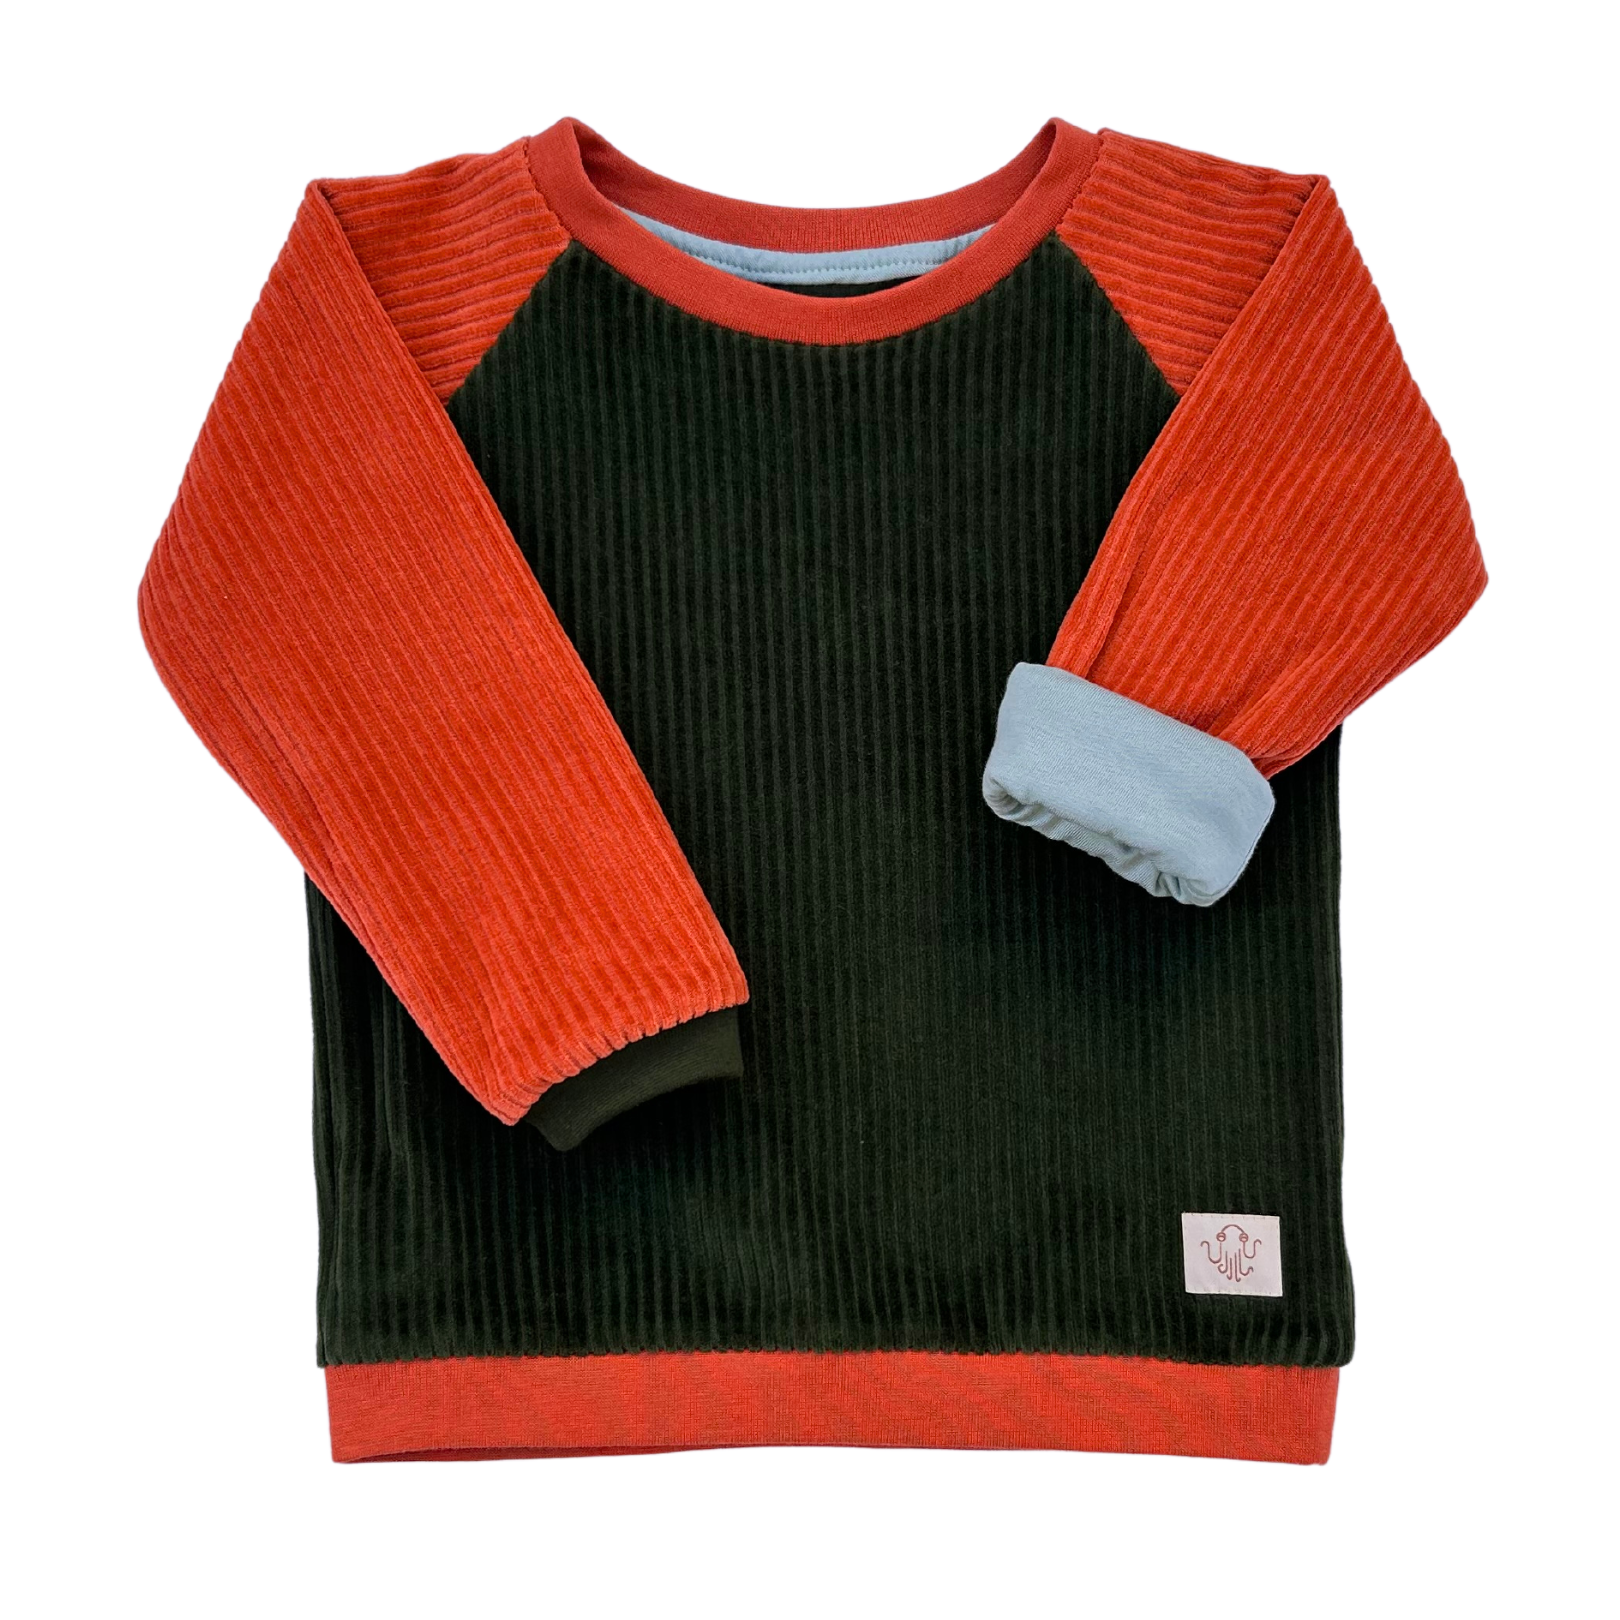 Fairer Cord Alltagsbegleiter für Kinder in Grün Orange aus Bio-Baumwolle von der Marke Oktopulli